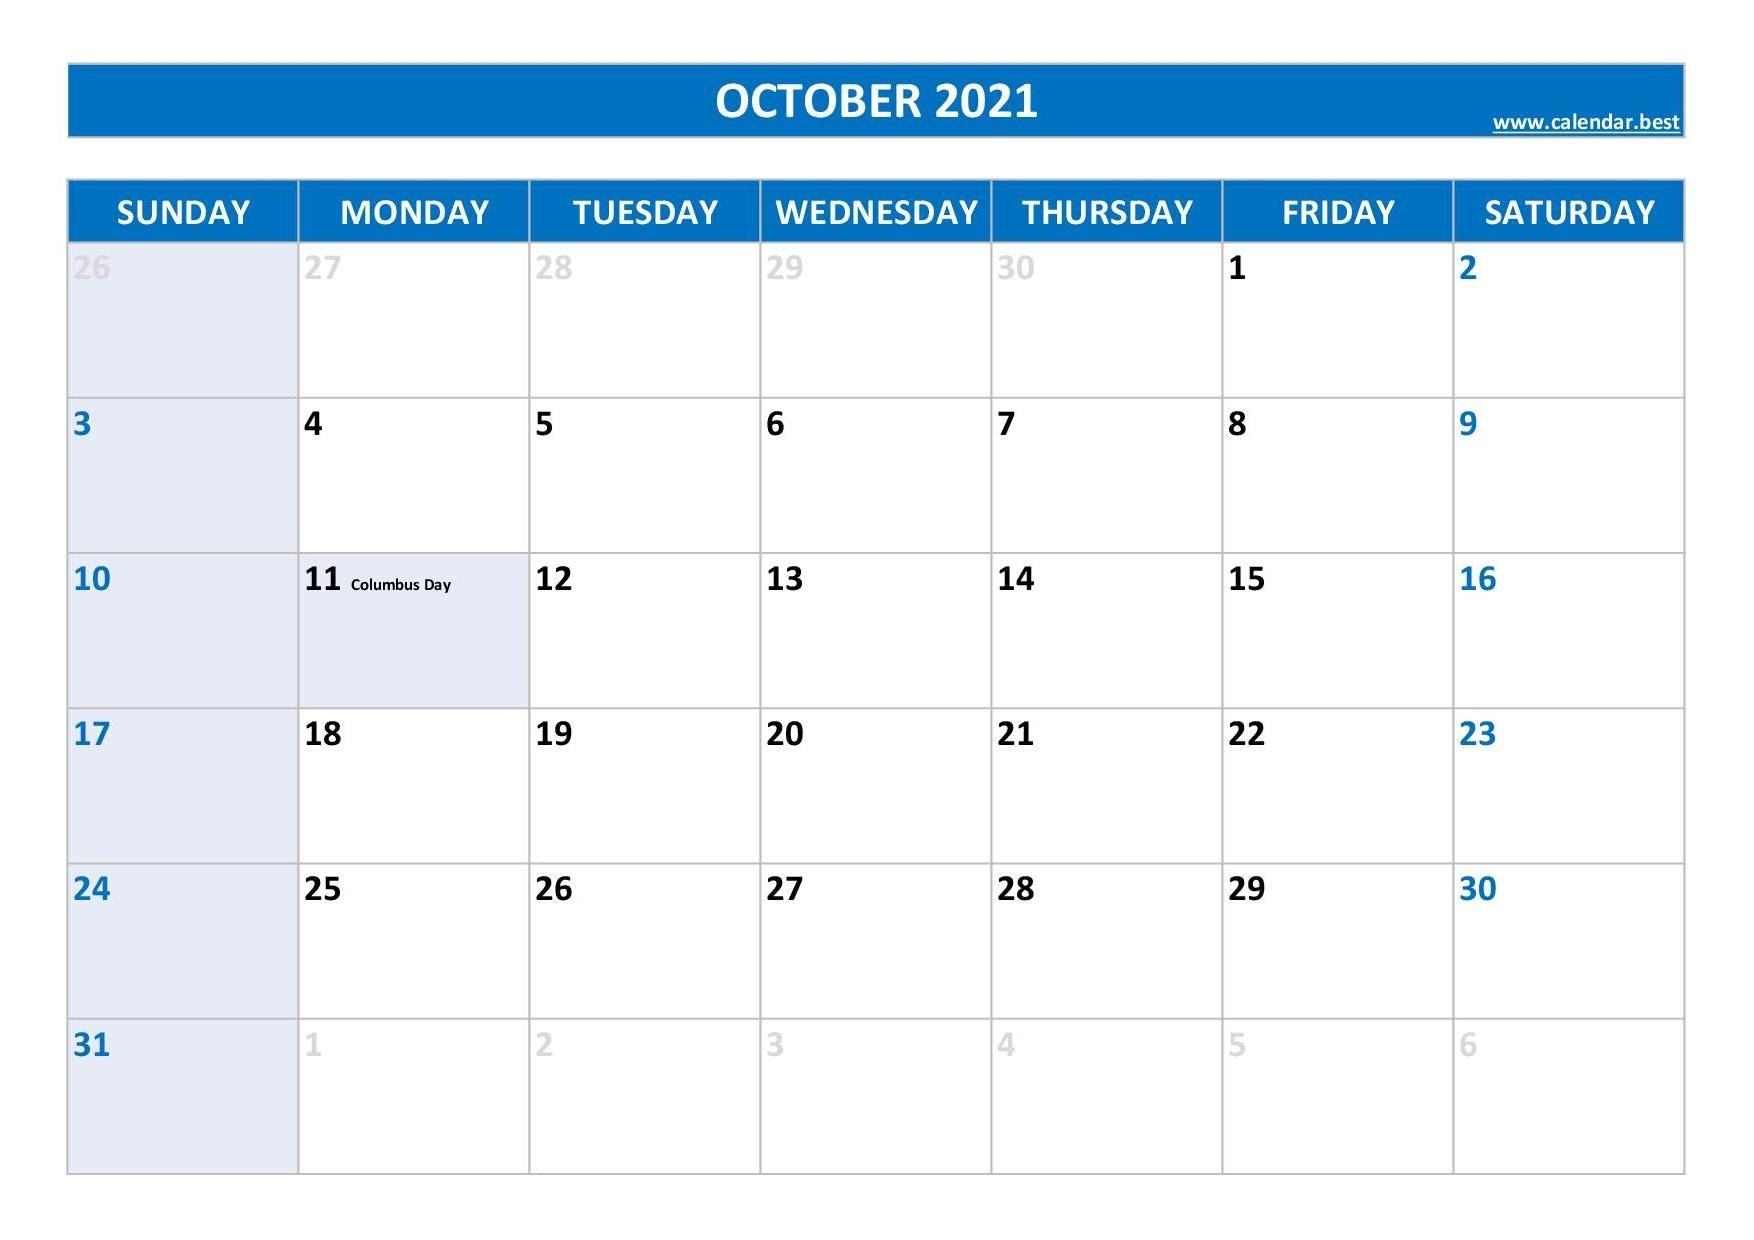 October 2021 Calendar -Calendar.best Calendar For October 2021